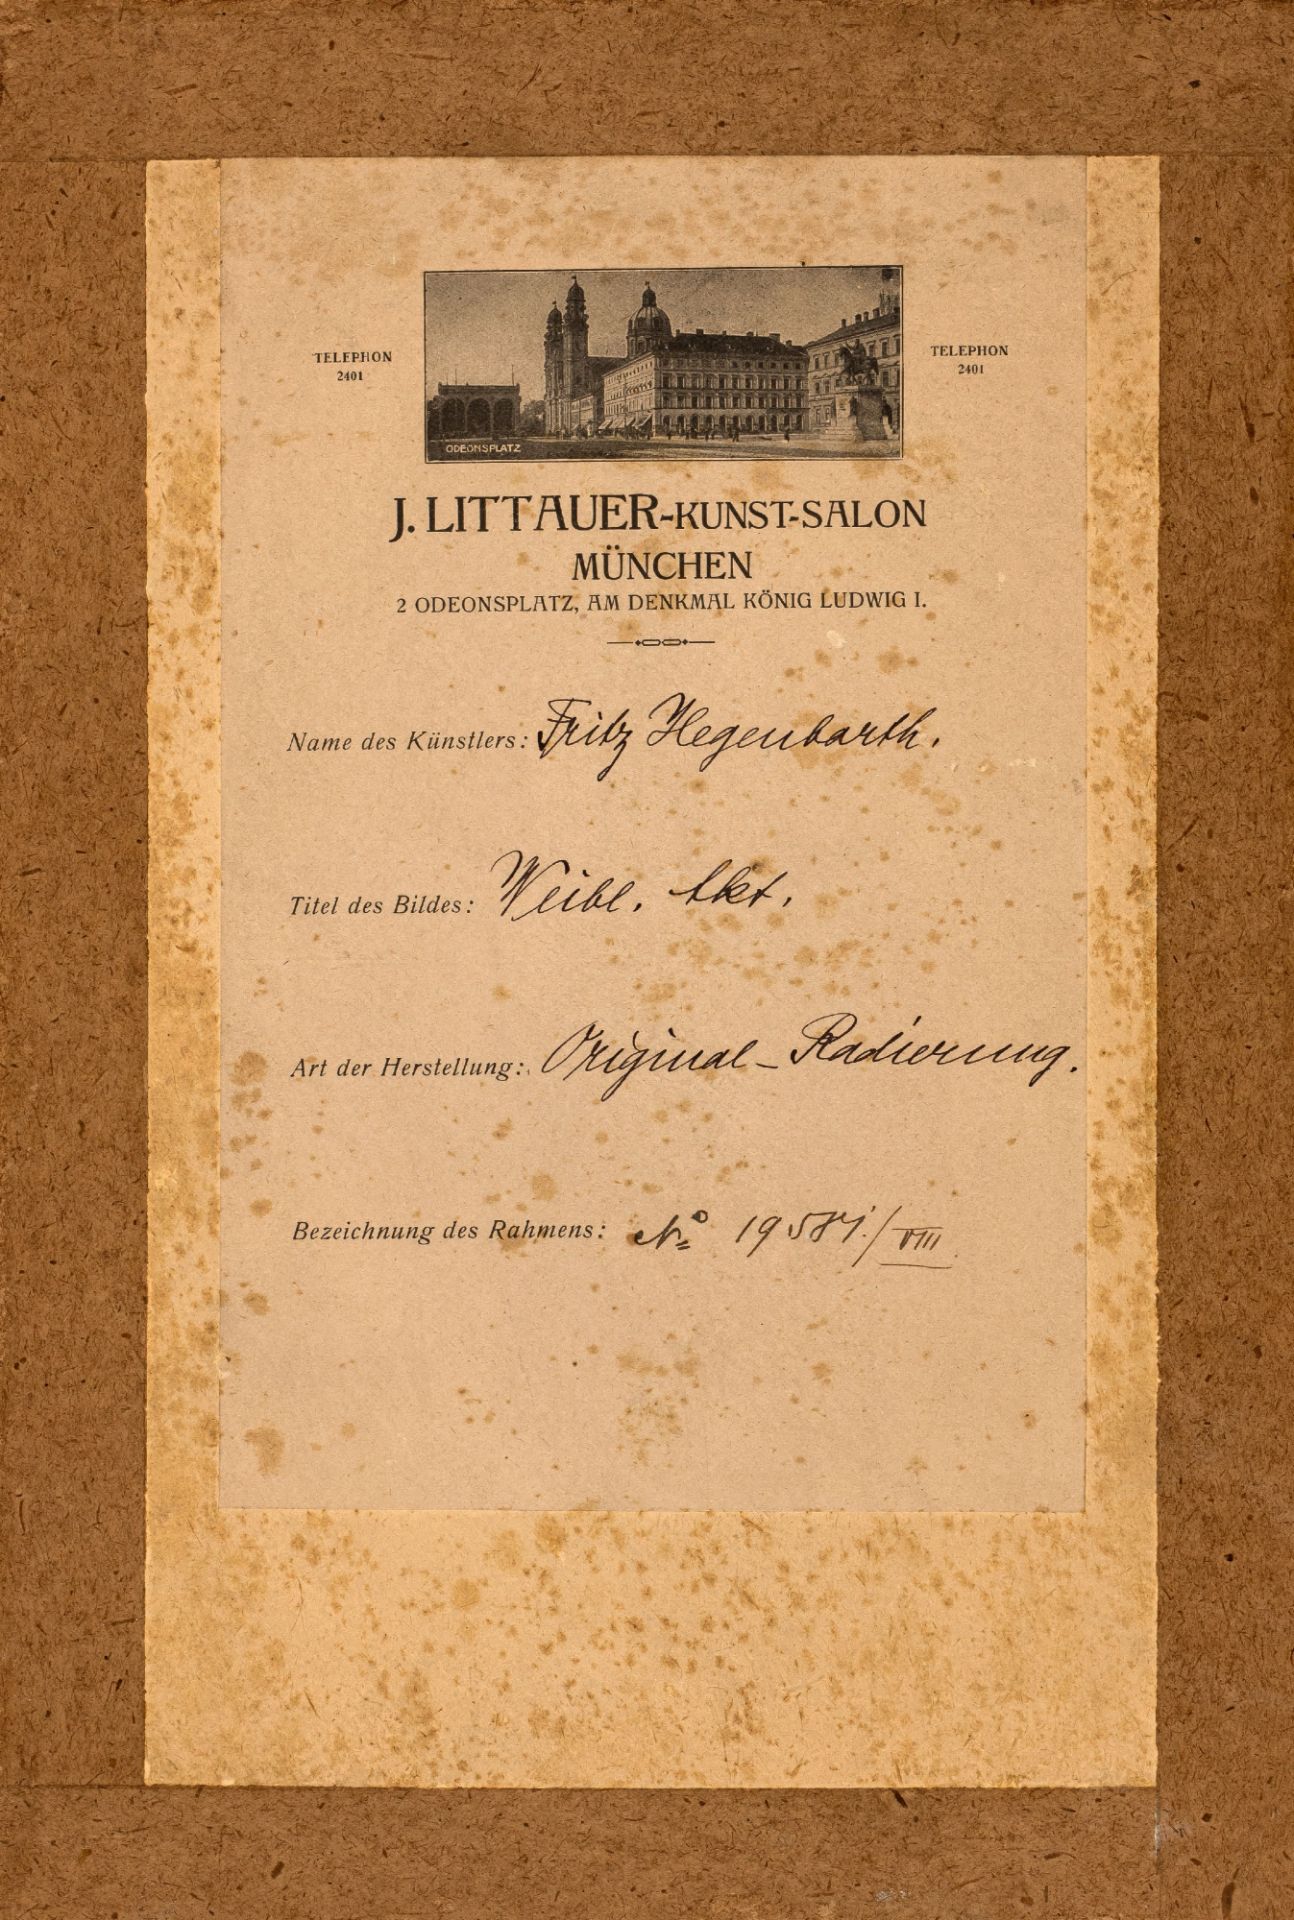 Hegenbart, Fritz | 1864 Salzburg, Österreich - 1943 Bayrisch Gmain - Image 2 of 2